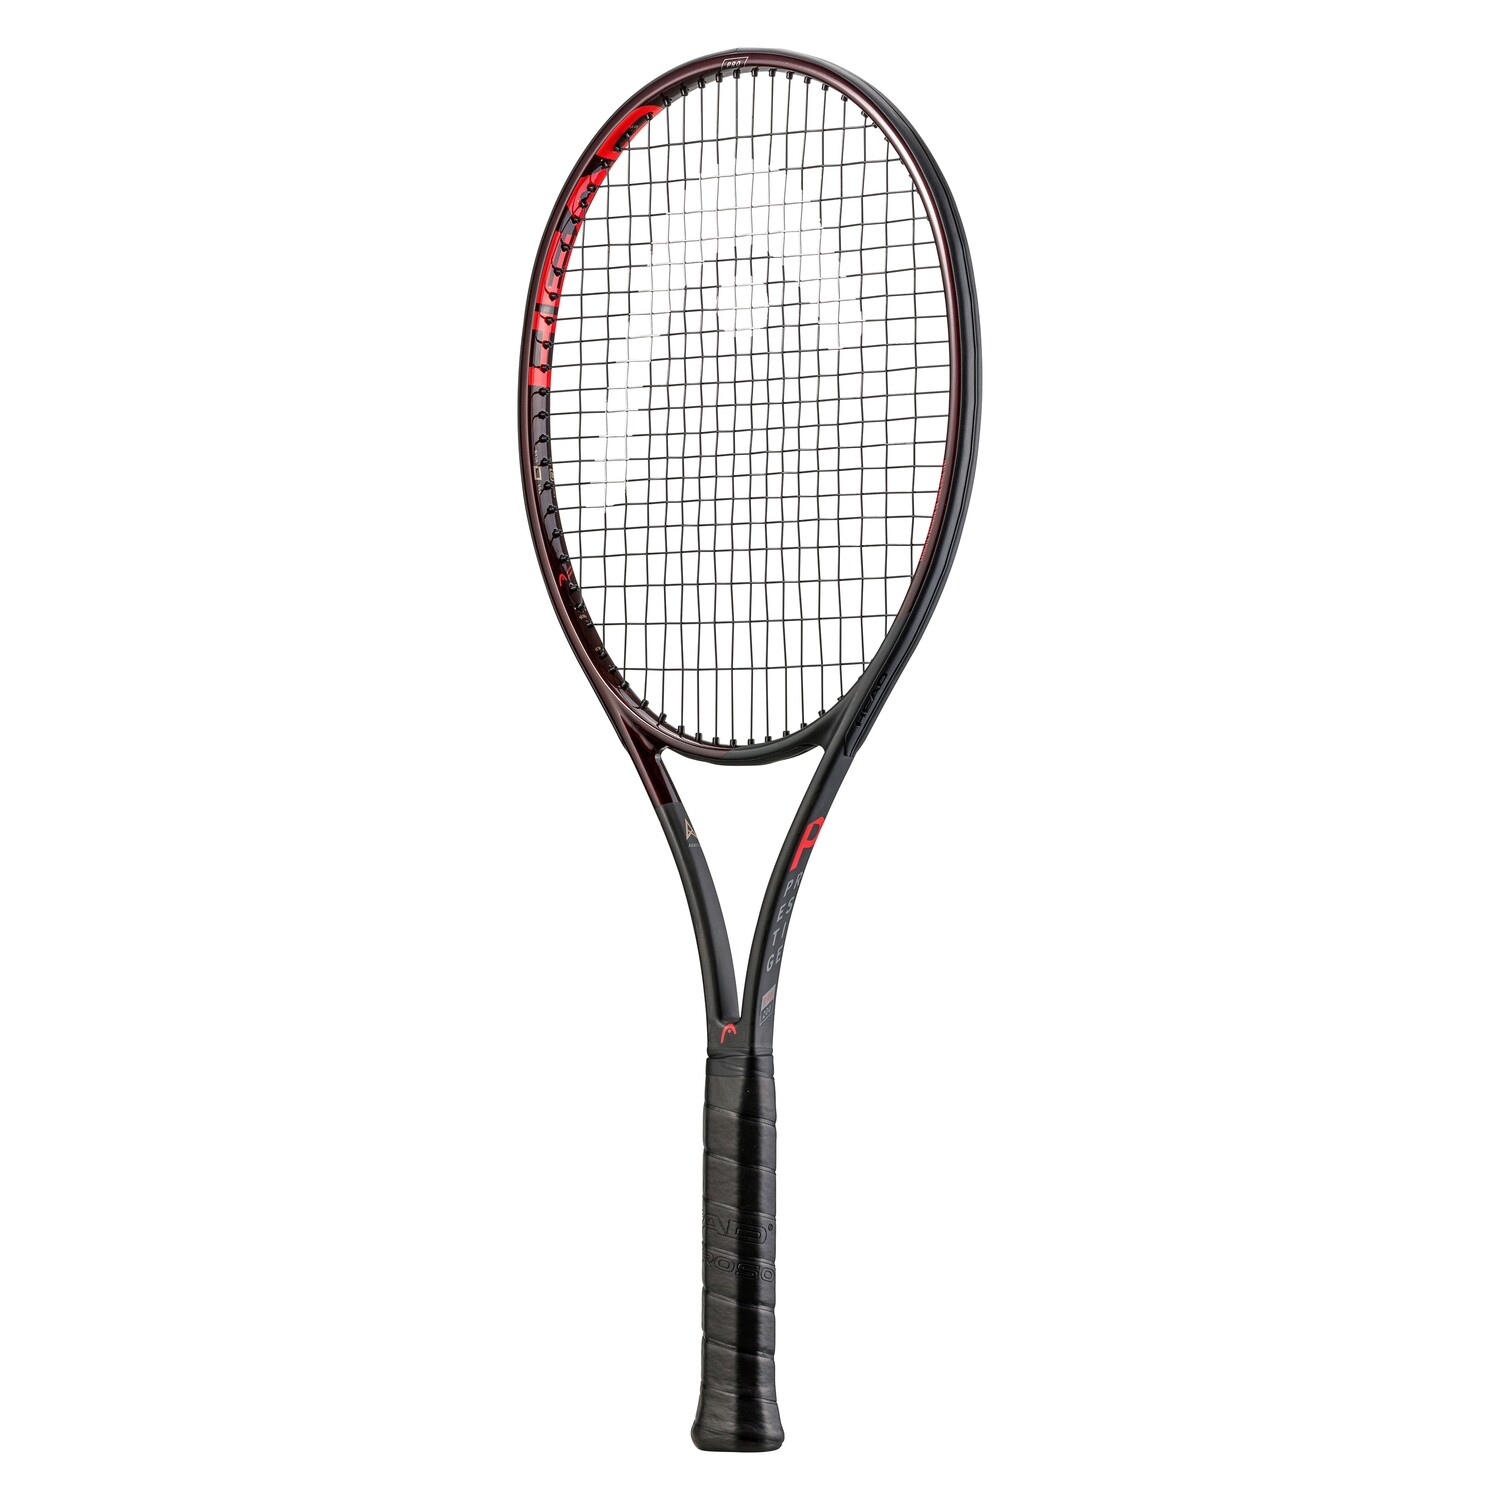 Head Prestige Pro Tennis Racket, Grip Size: G3 (4 3/8)